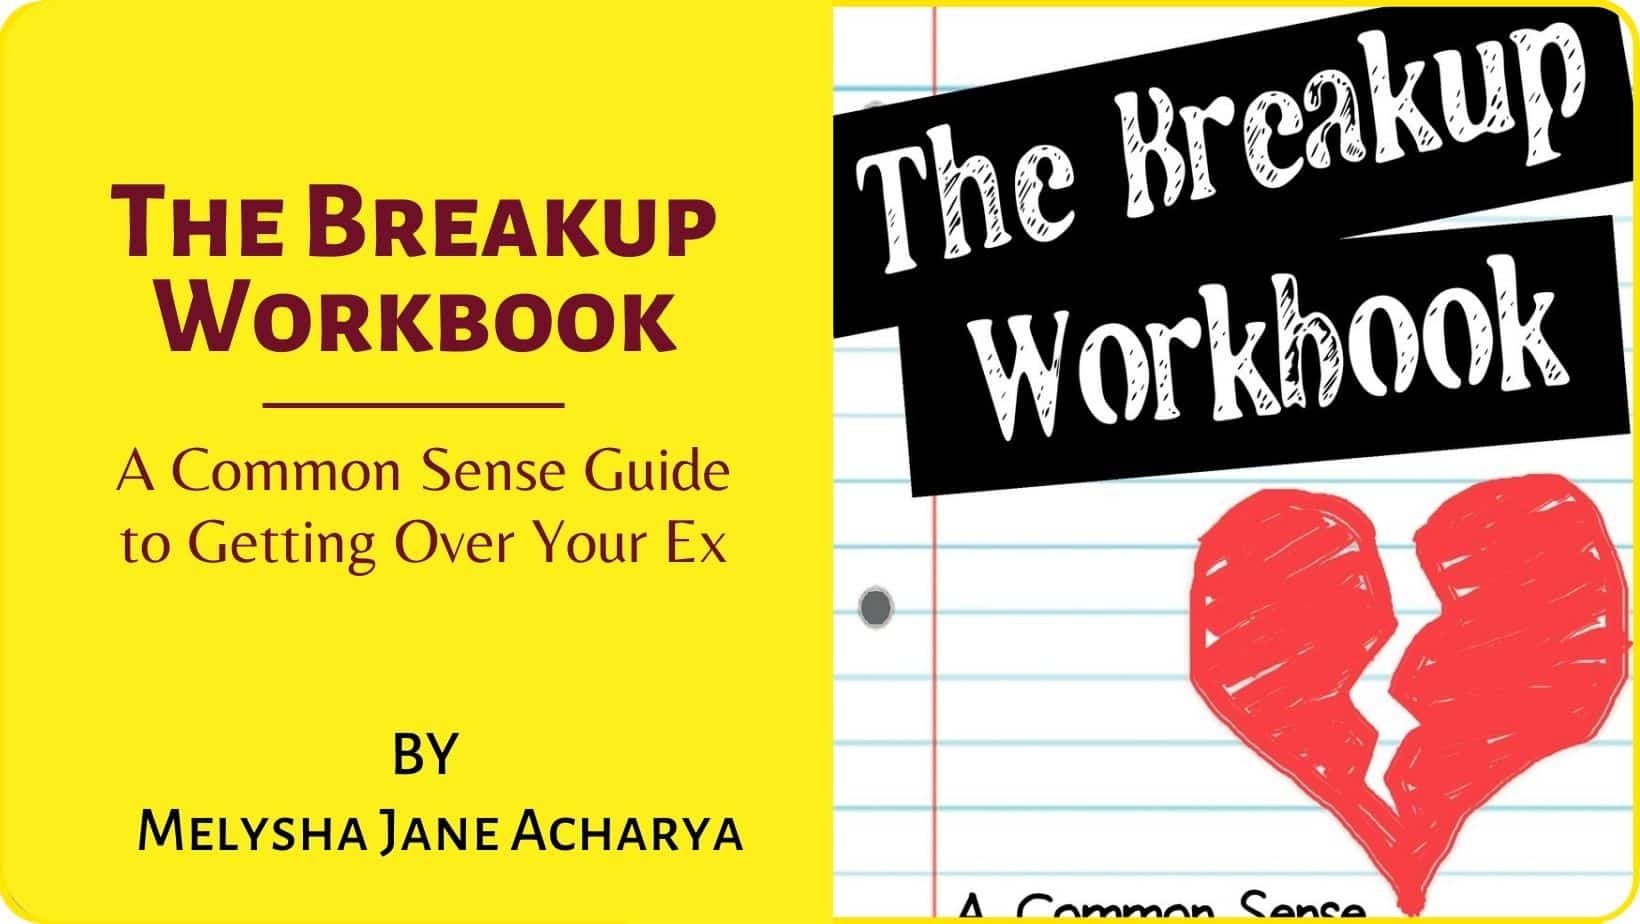 The Breakup Workbook by Melysha Jane Acharya